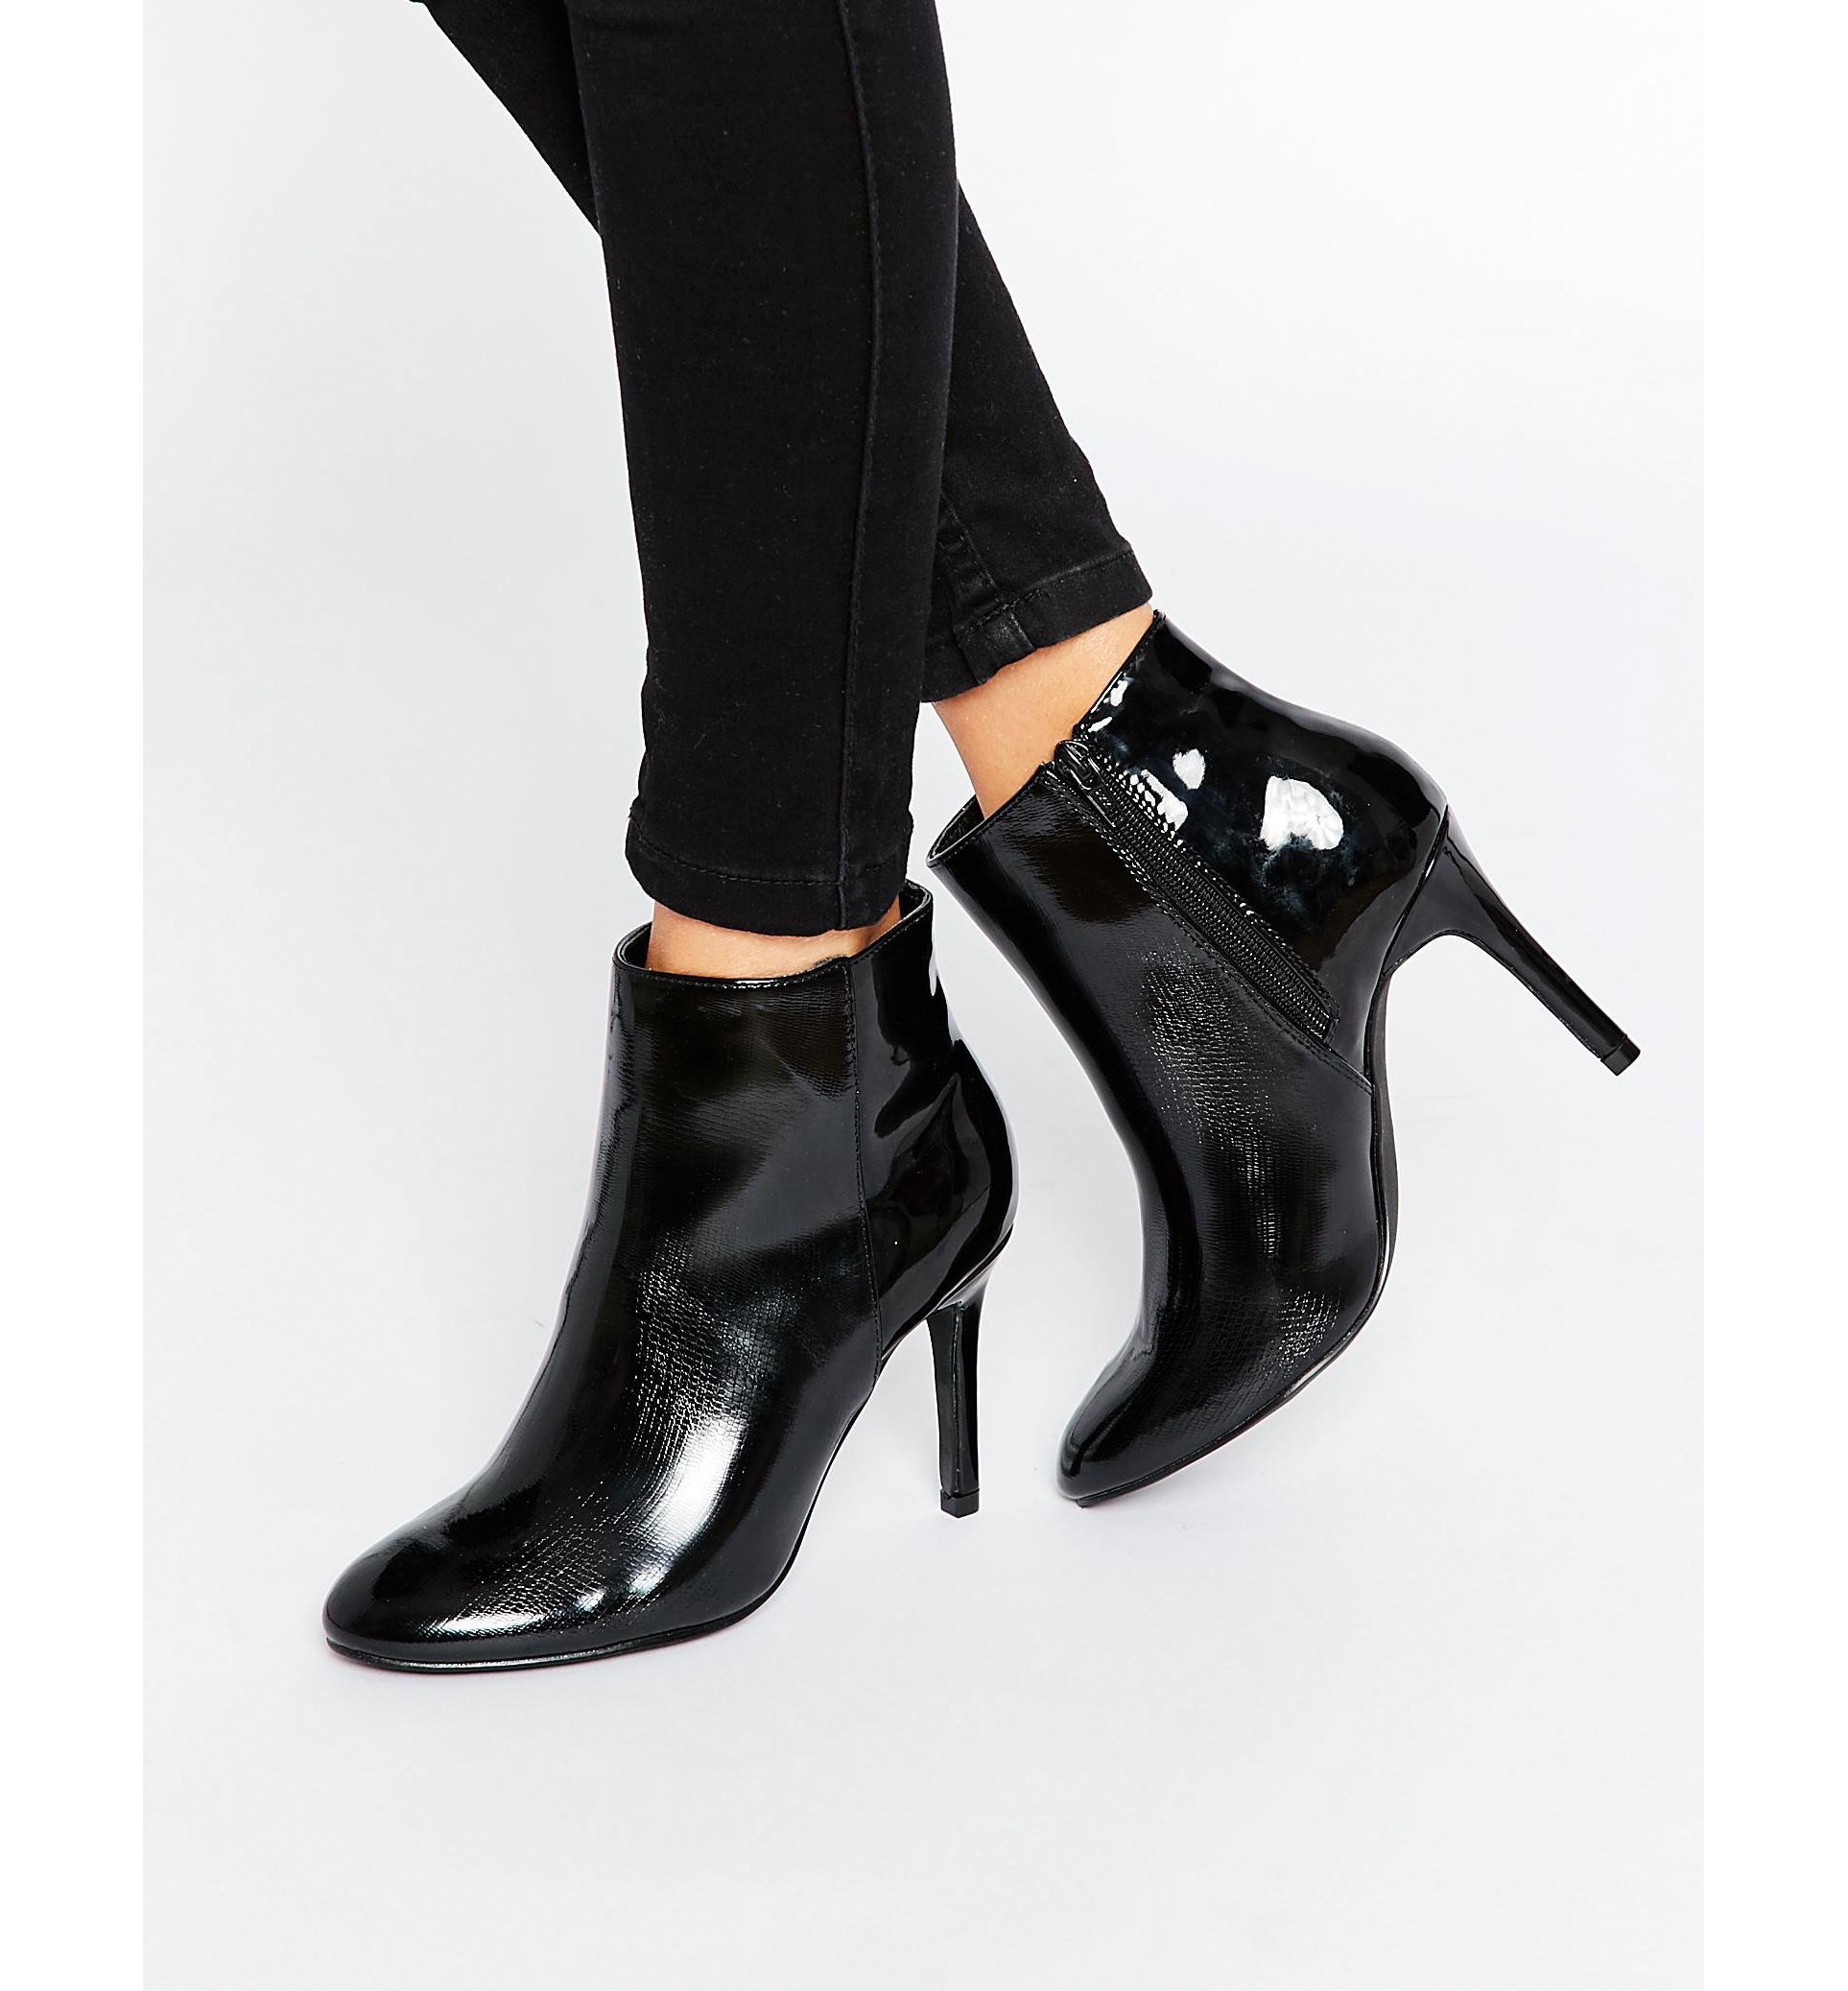 Ботинки женские черные на каблуке